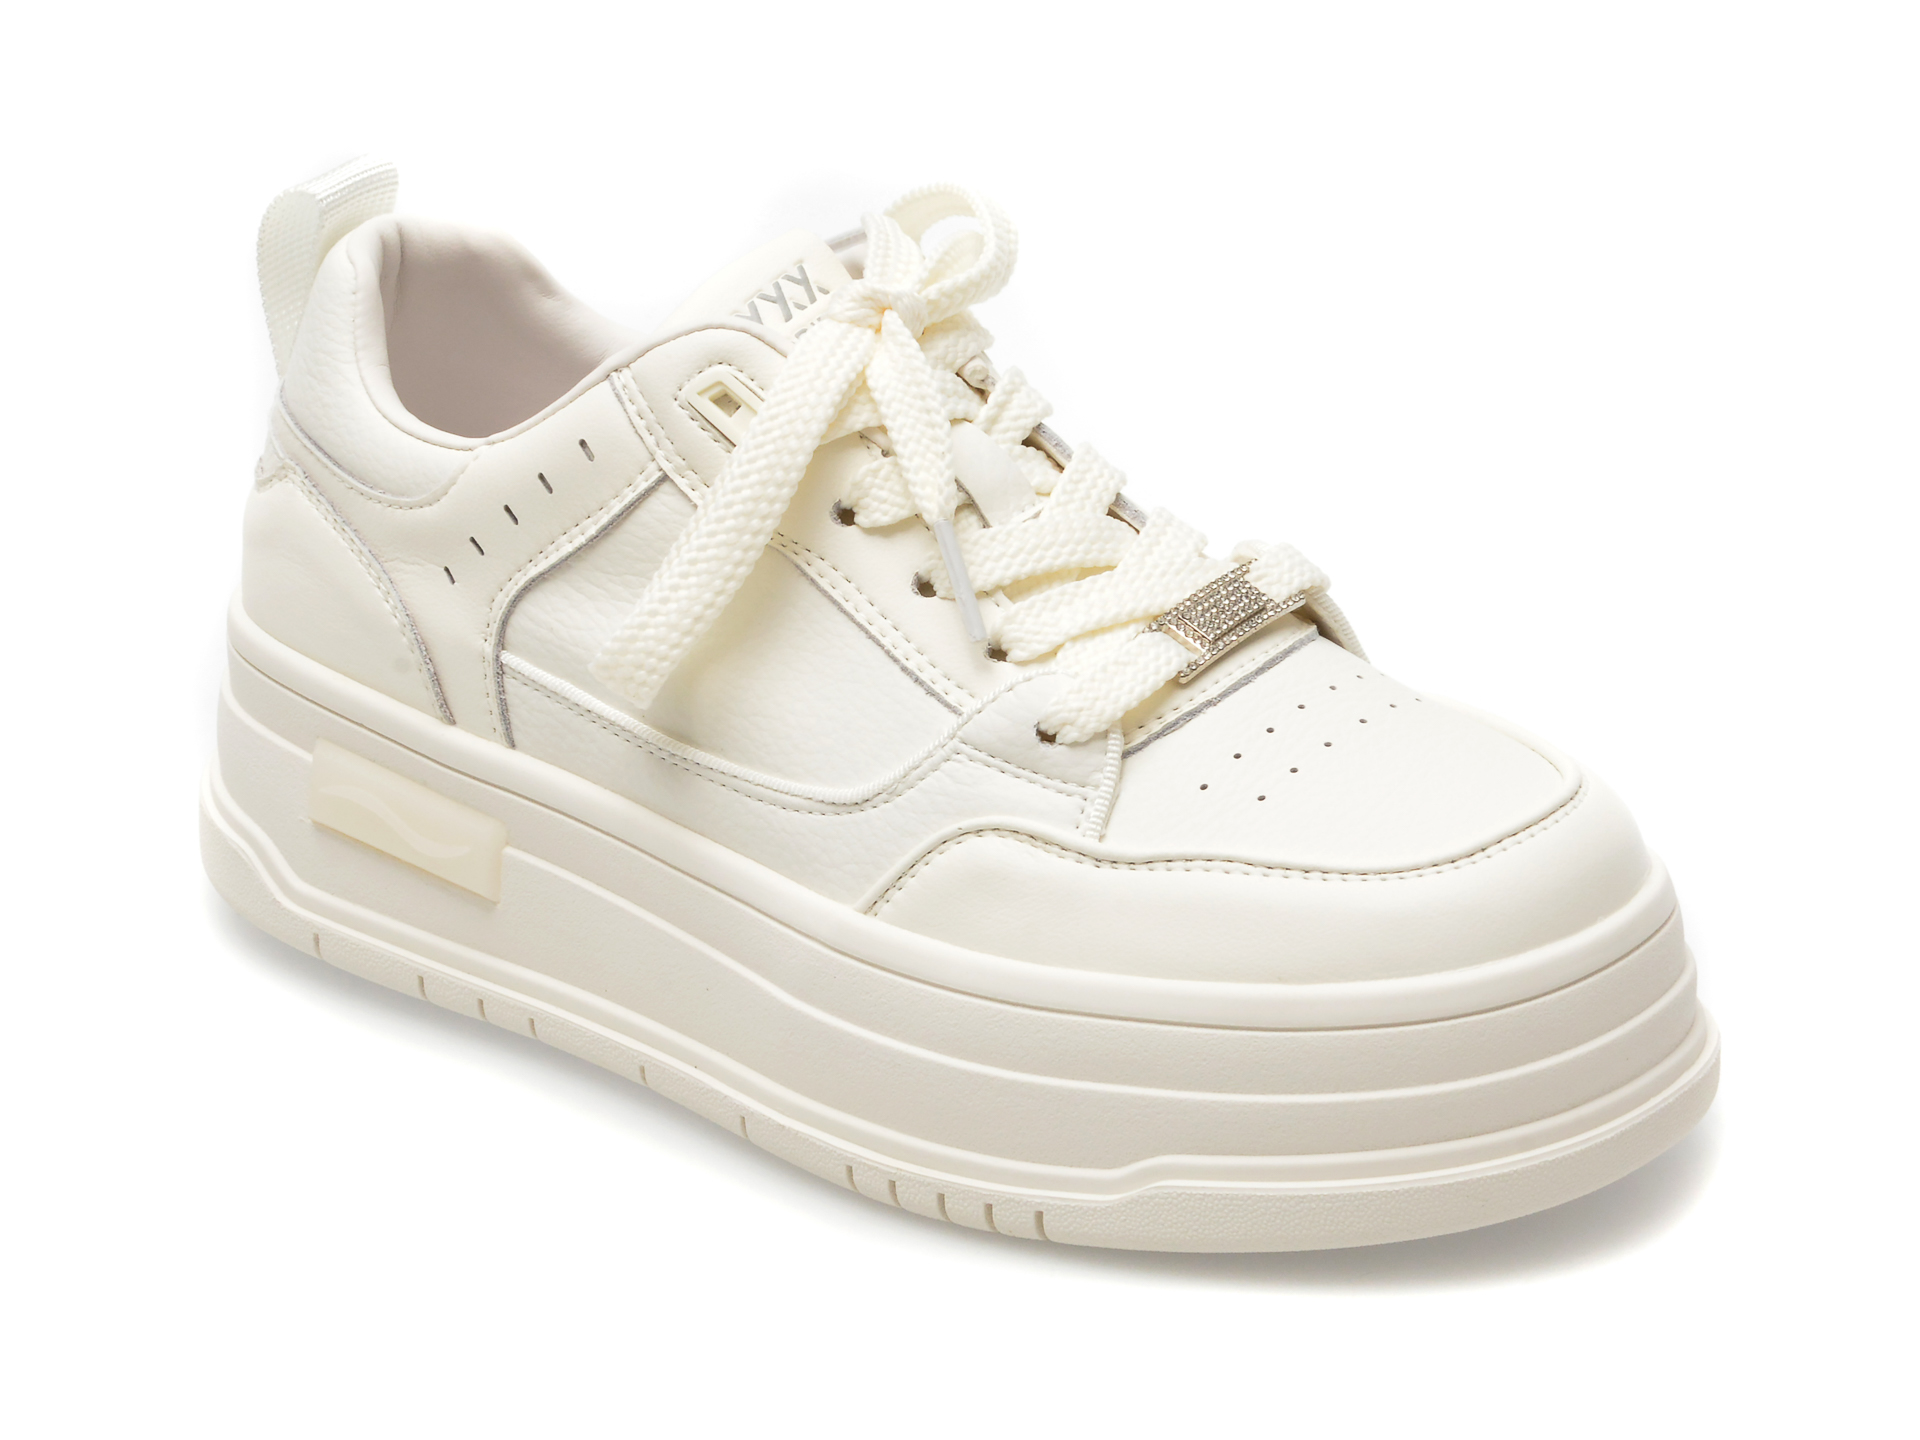 Pantofi GRYXX albi, 2357, din piele naturala